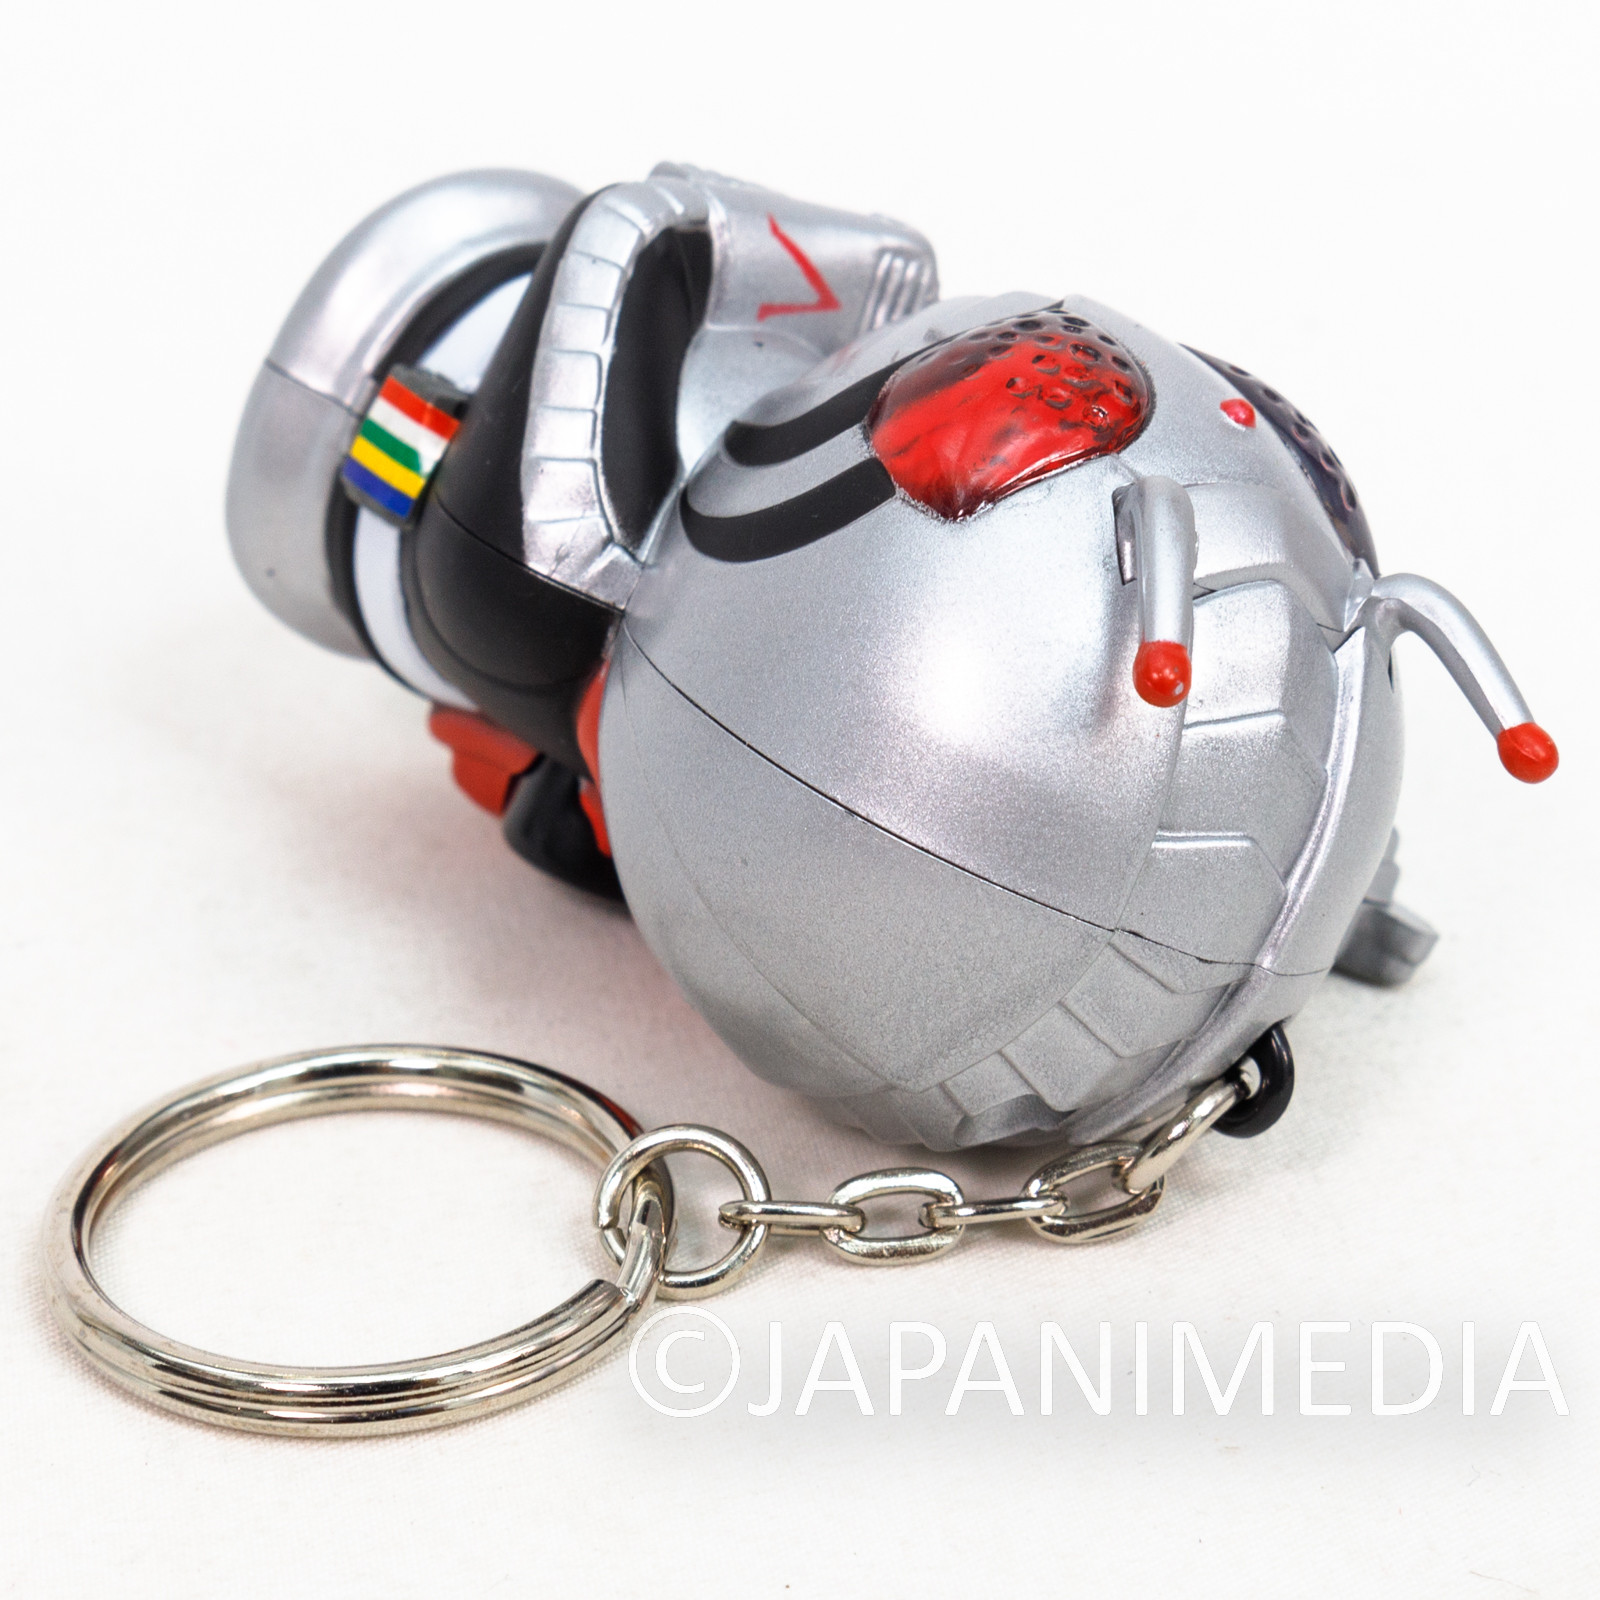 Kamen Rider Masked Rider Super-1 Figure Keychain JAPAN TOKUSATSU